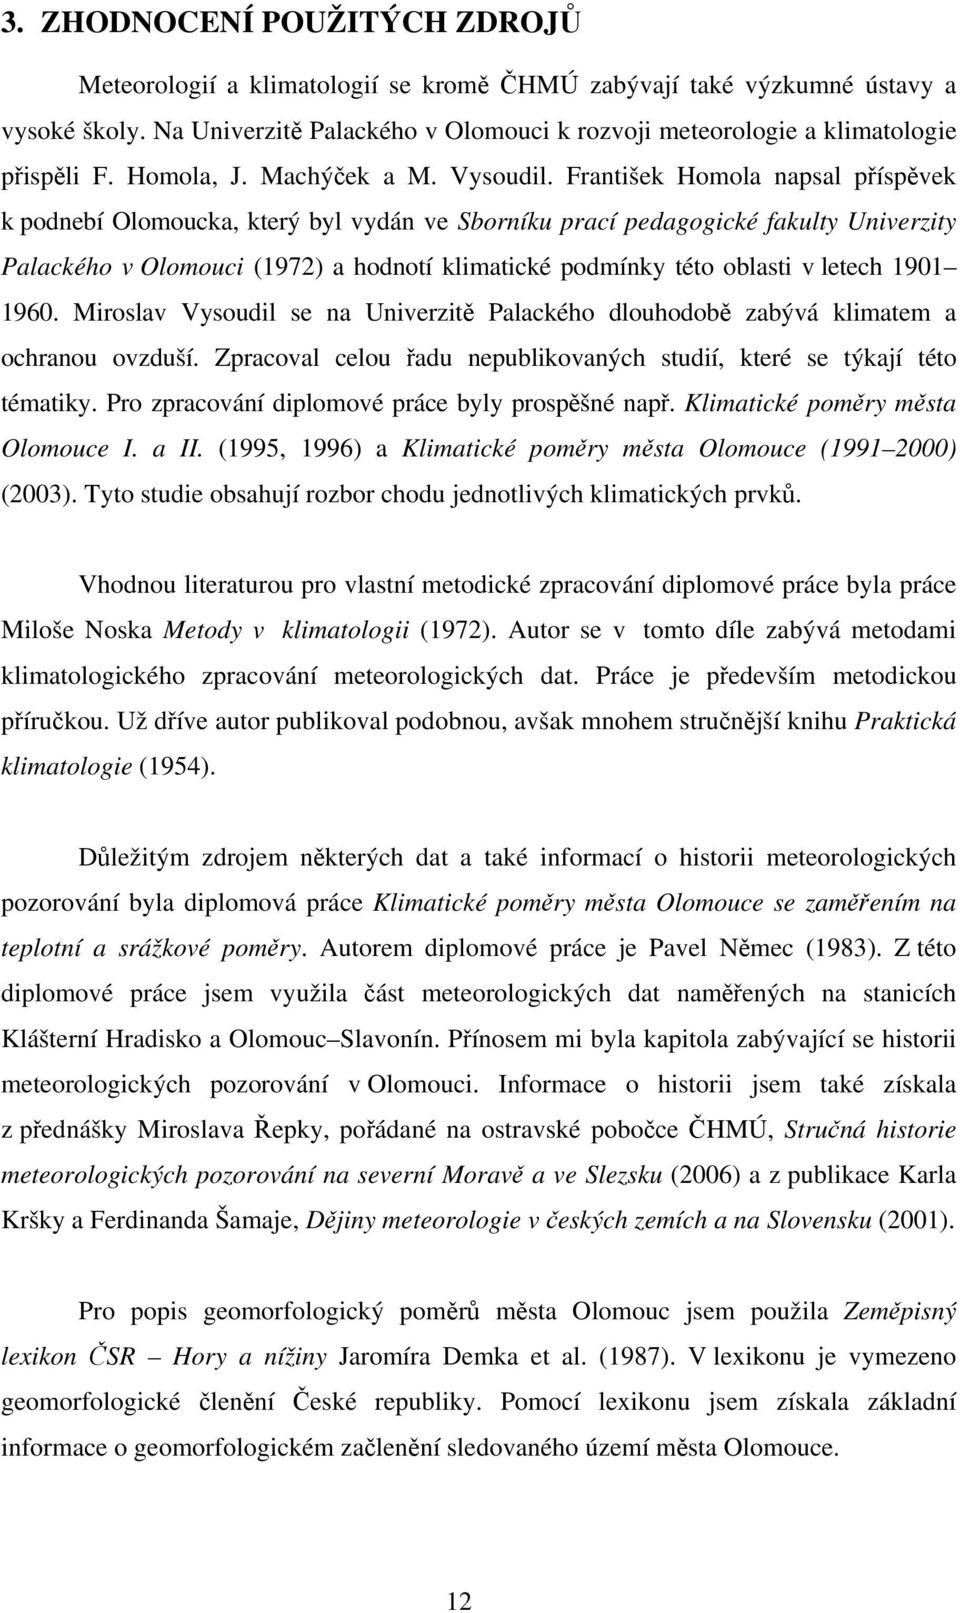 František Homola napsal příspěvek k podnebí Olomoucka, který byl vydán ve Sborníku prací pedagogické fakulty Univerzity Palackého v Olomouci (1972) a hodnotí klimatické podmínky této oblasti v letech